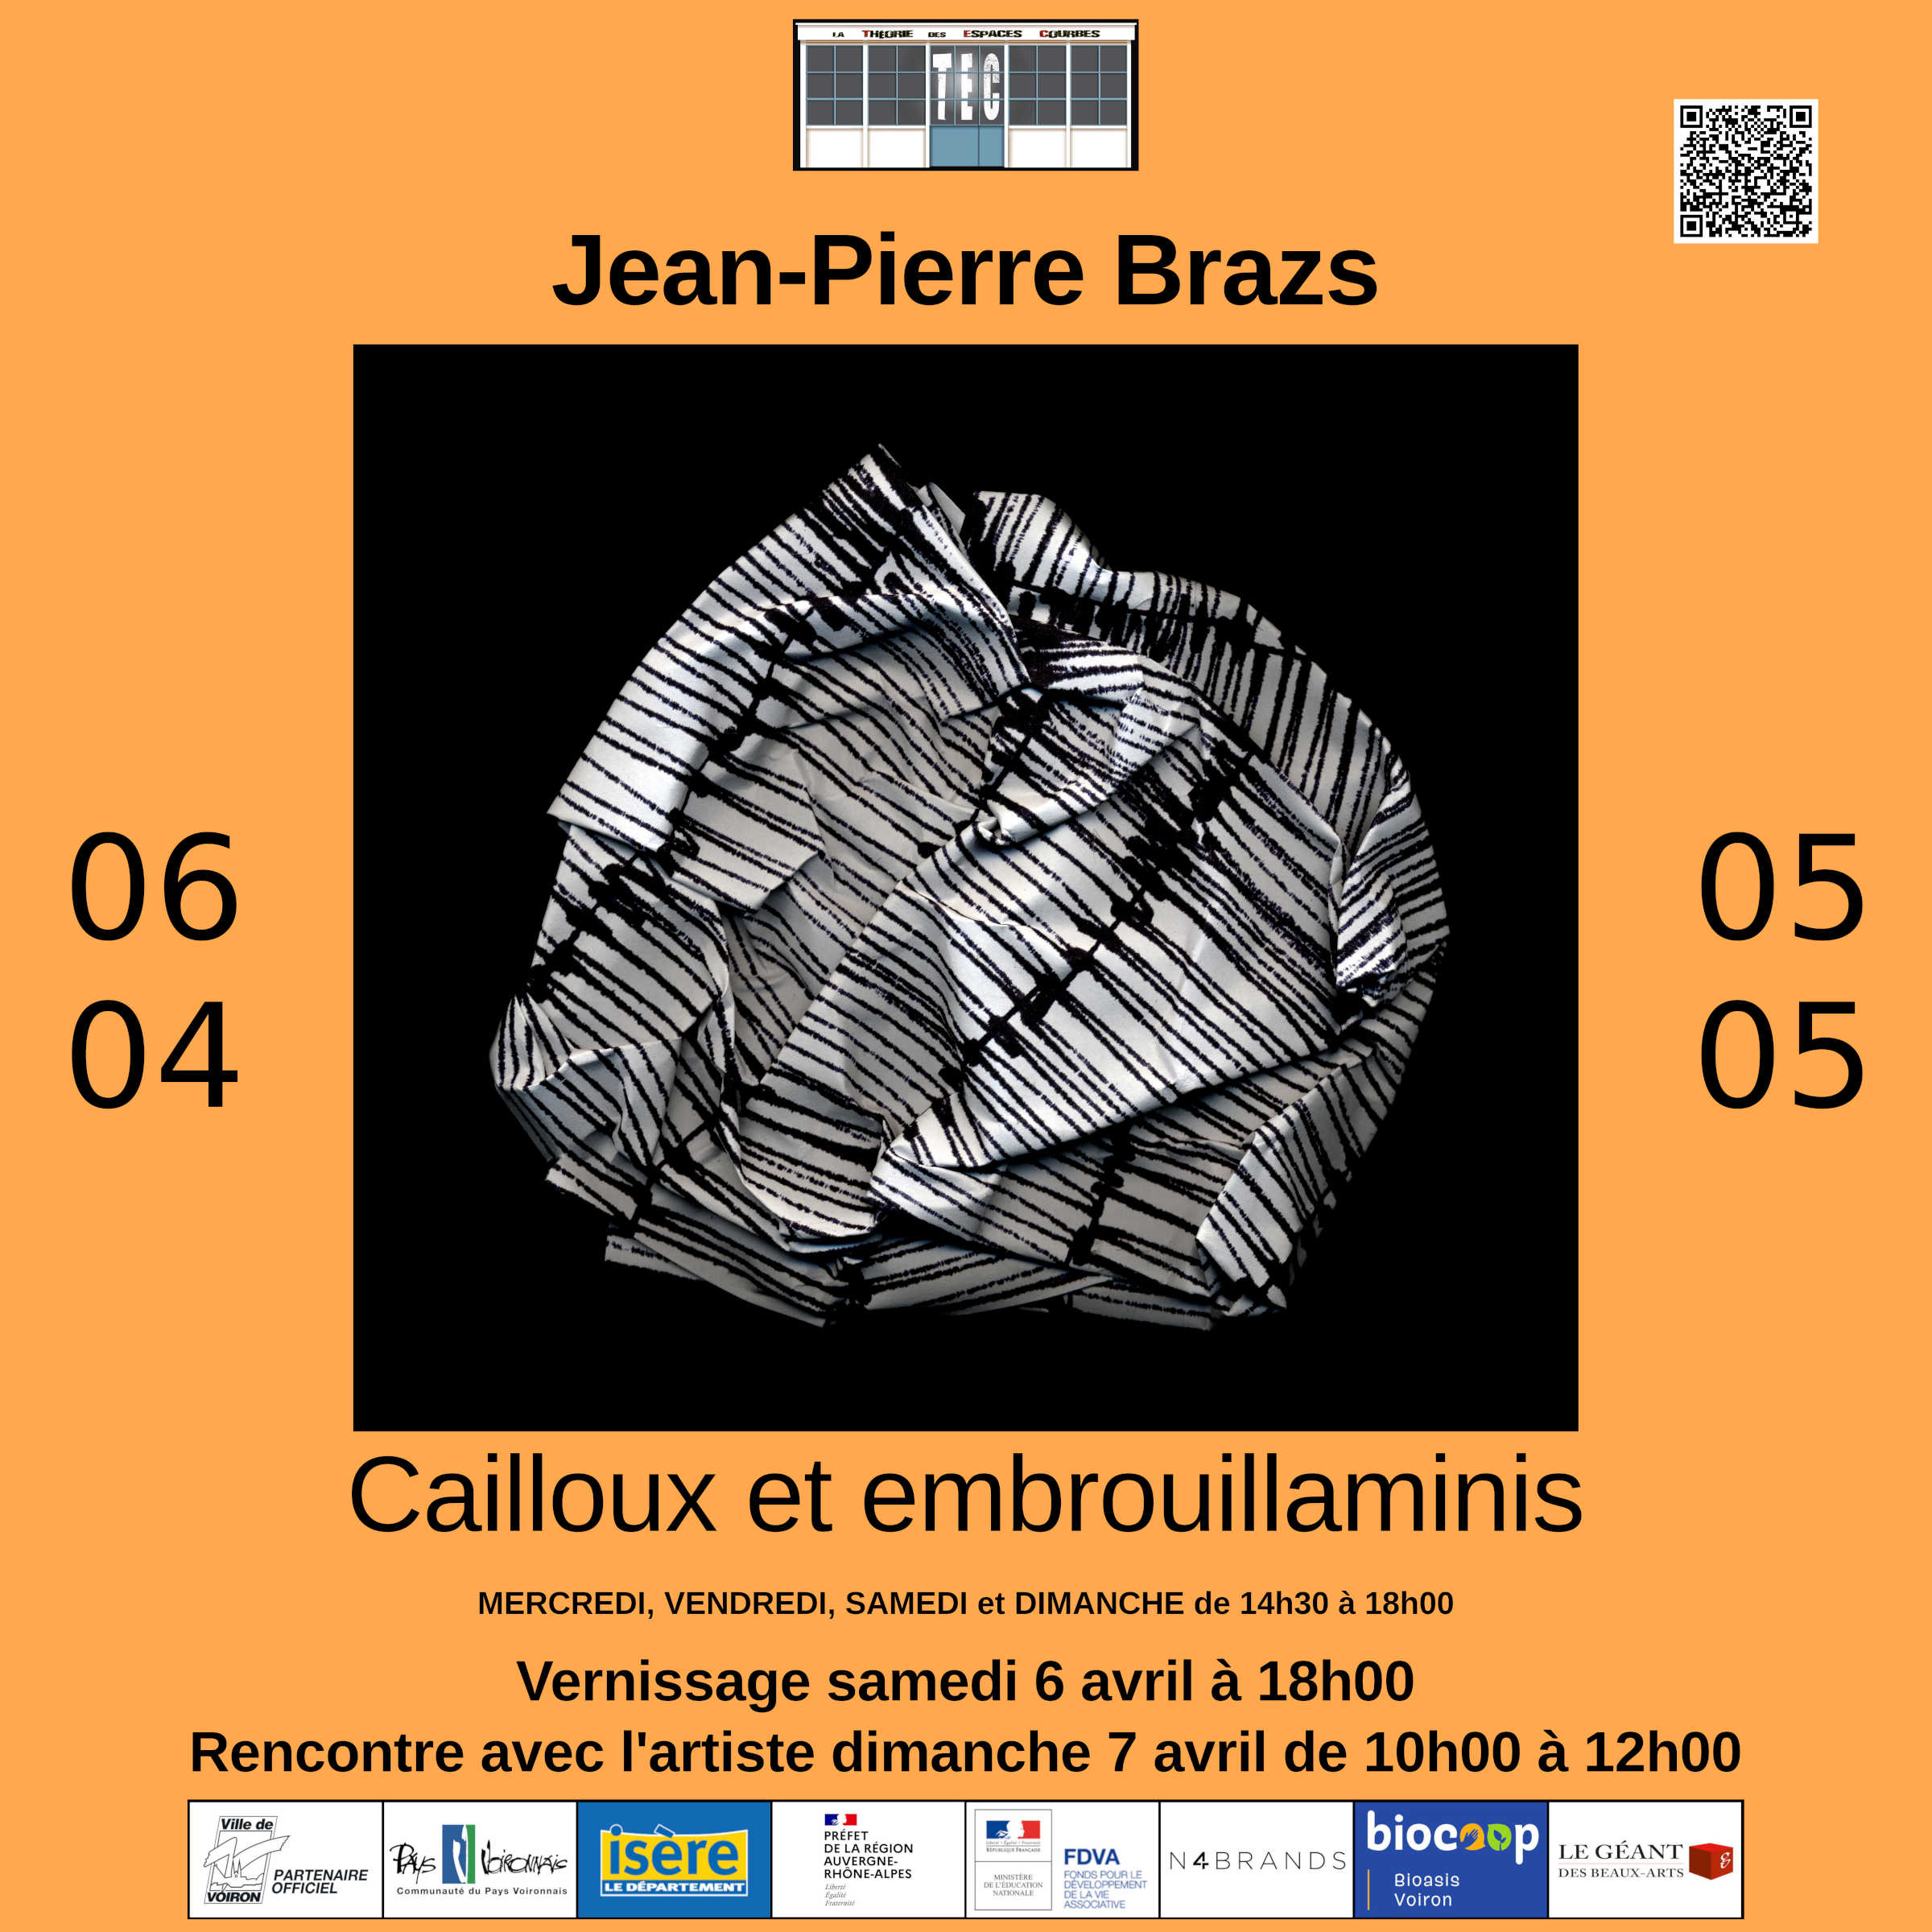 Jean-Pierre Brazs "Cailloux et embrouillaminis"